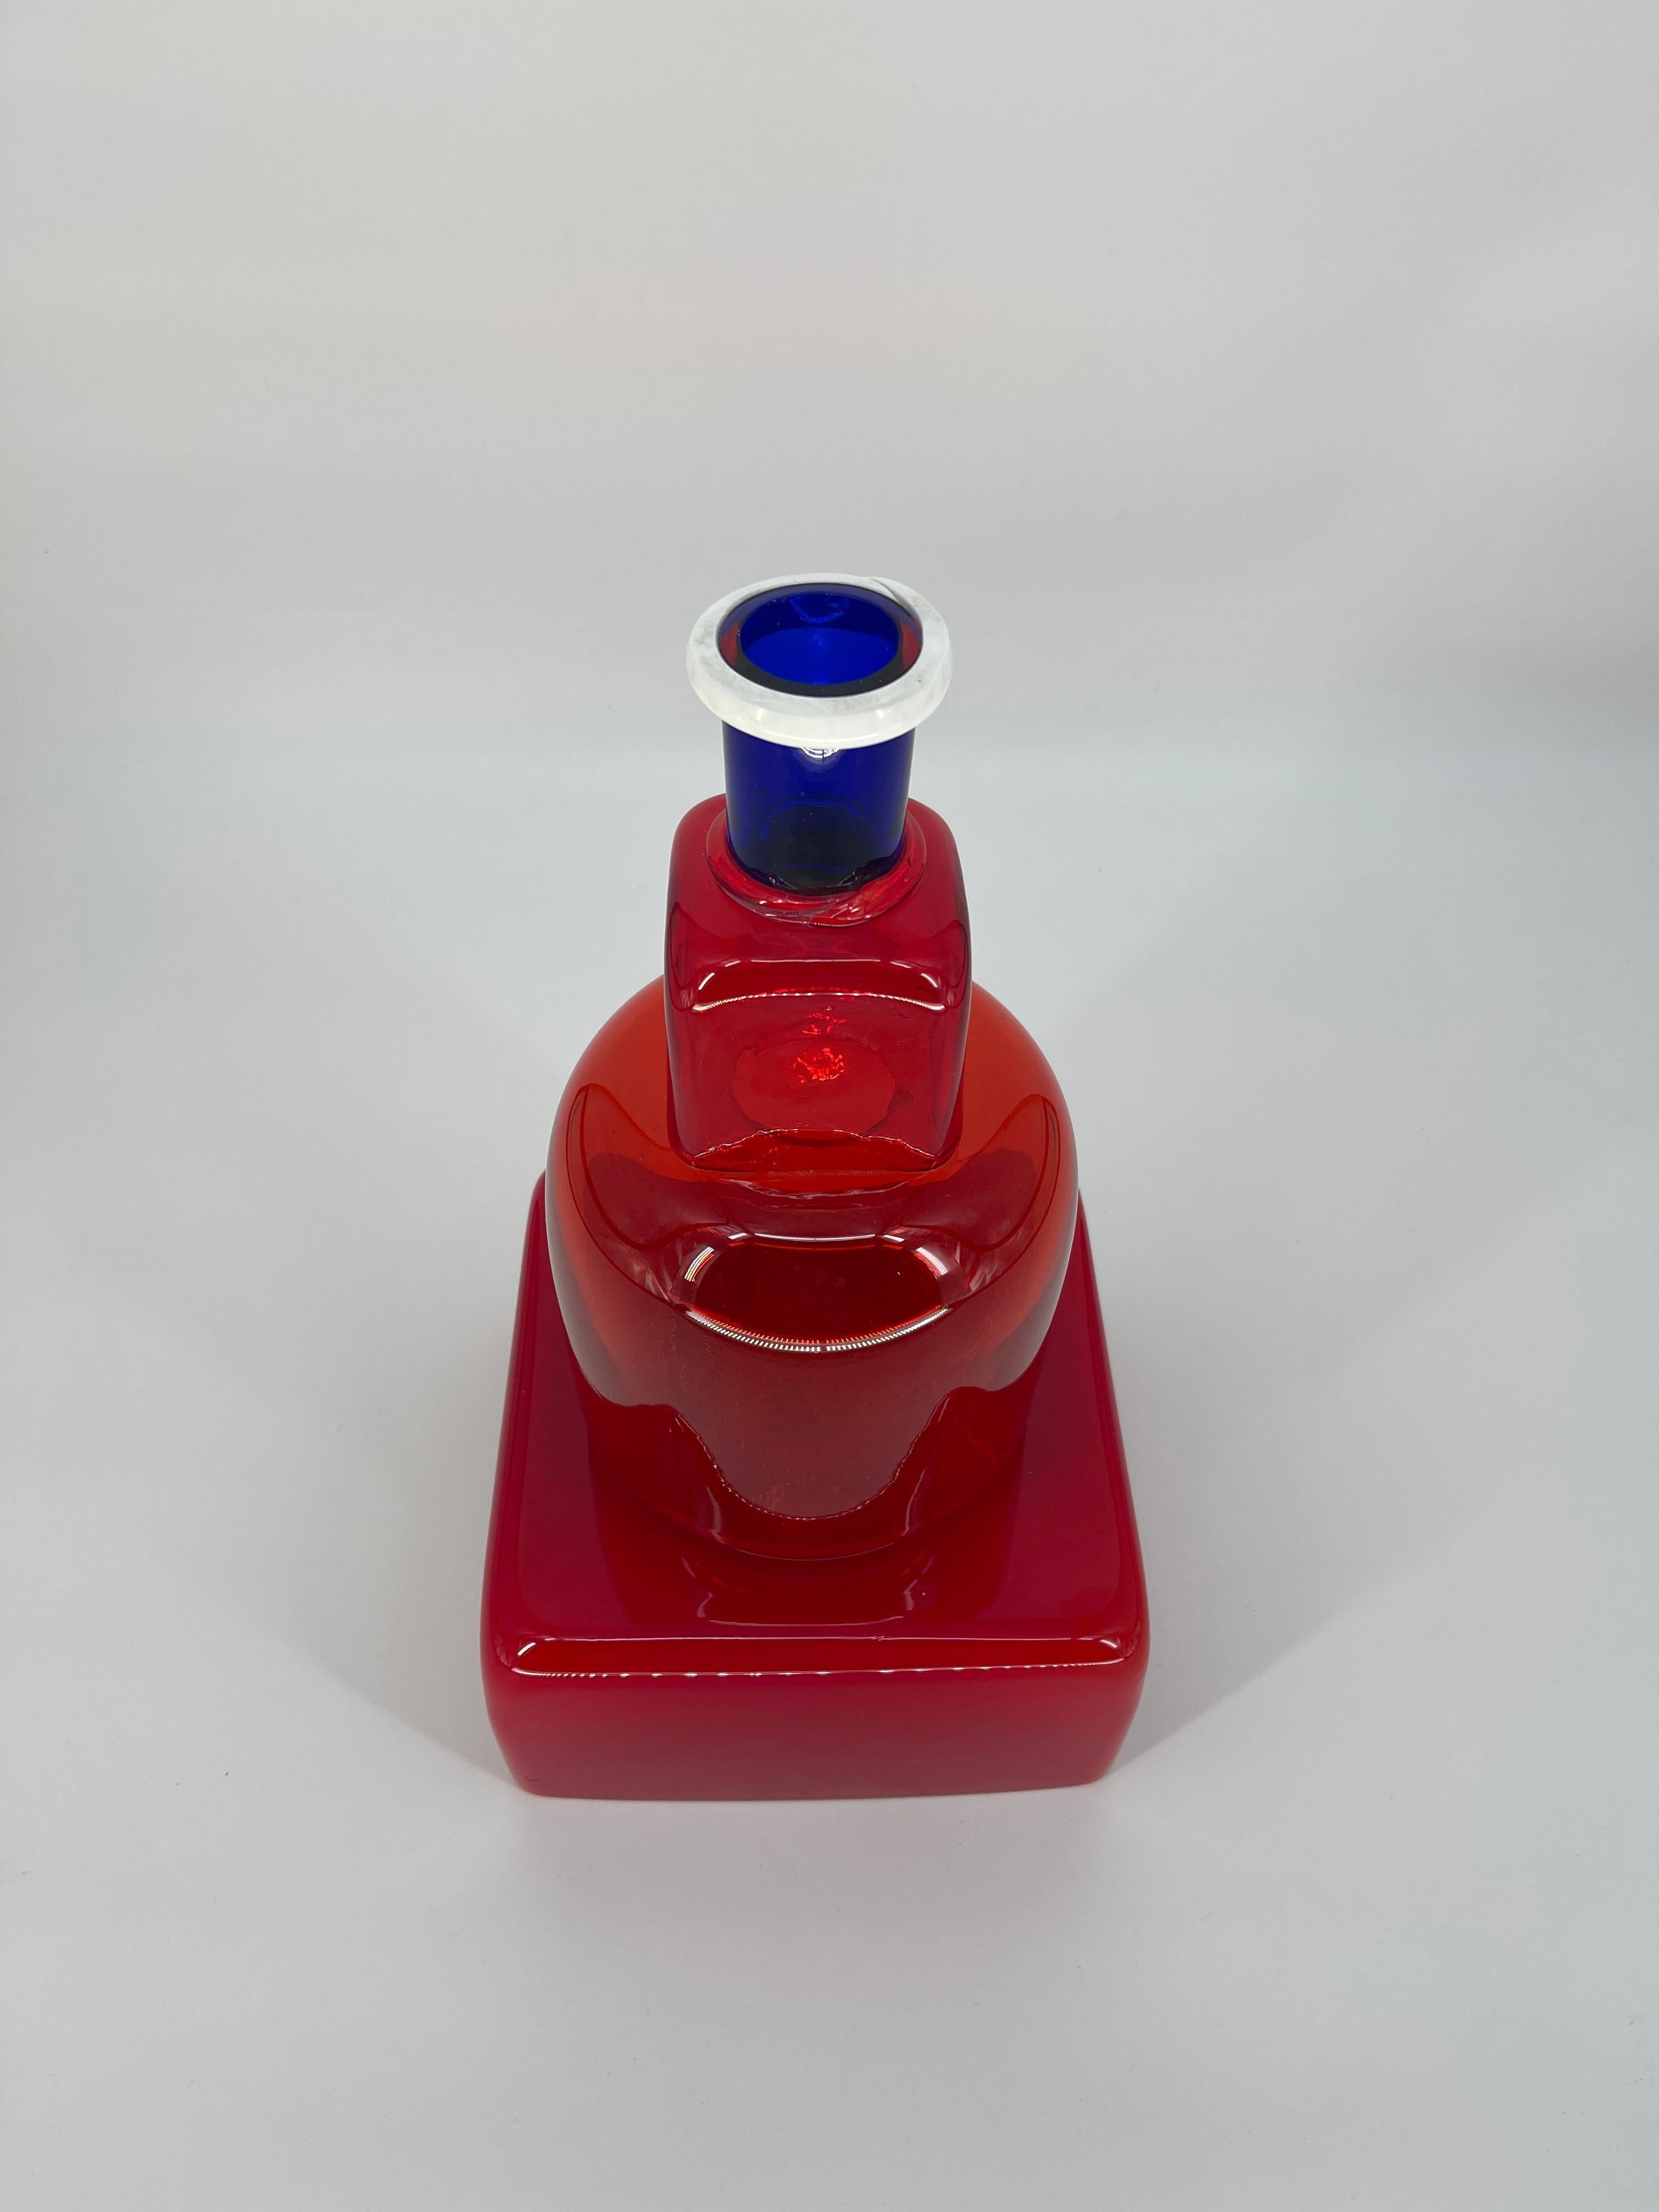 Post-Modern Marco Zanini for Memphis - Kita Vase by Toso Vetri d'arte Provo d'autore For Sale